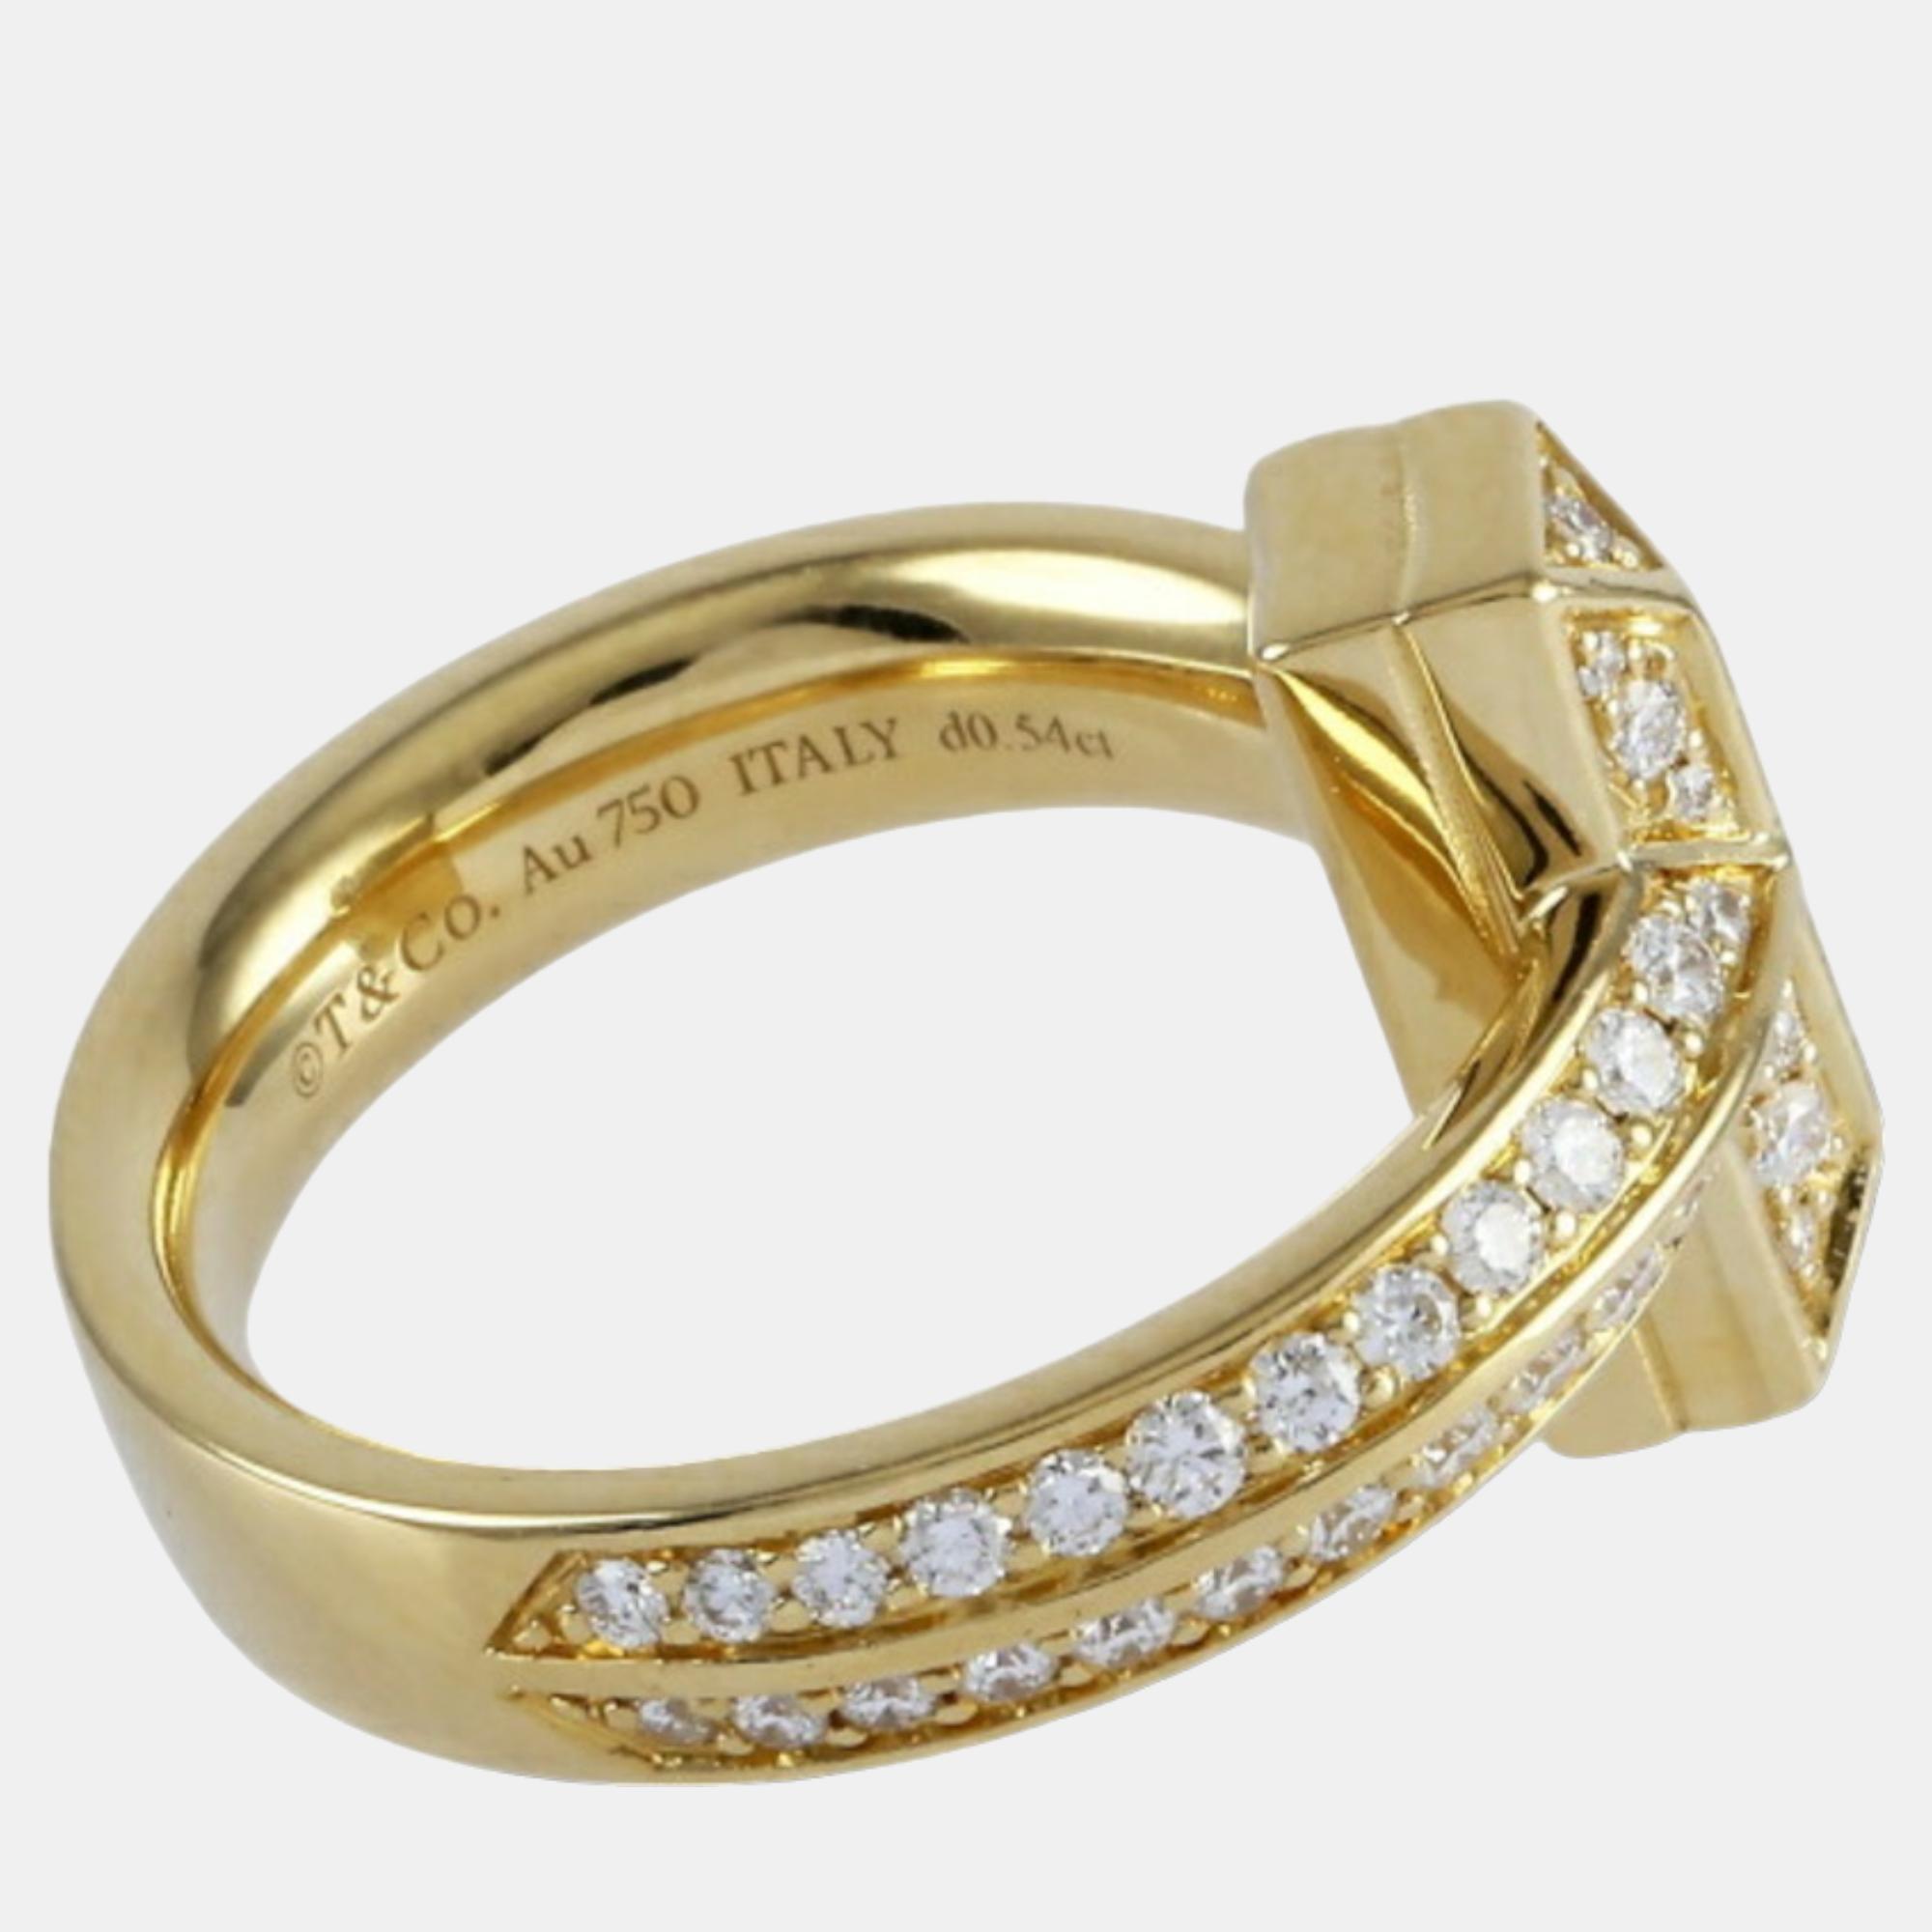 Tiffany & Co. Tiffany T 1 18K Yellow Gold Diamond Ring EU 47